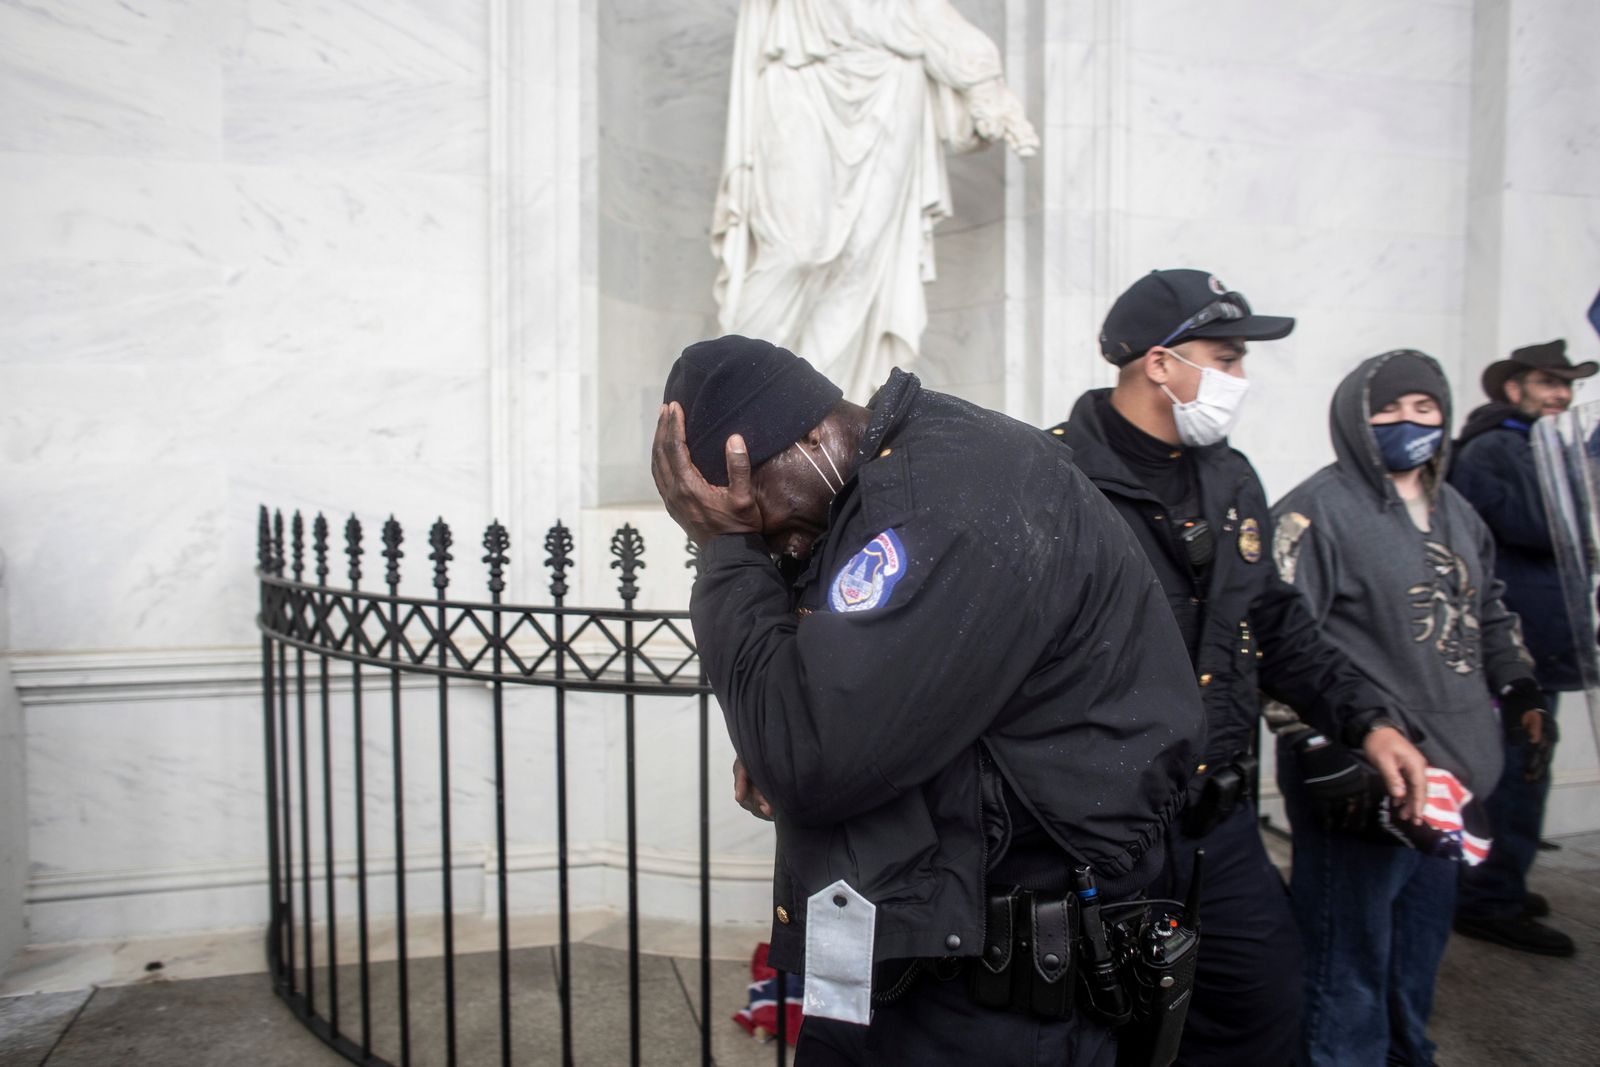 أحد أفراد شرطة الكابيتول يغطي وجهه بينما يقتحم المتظاهرون المبنى. - REUTERS